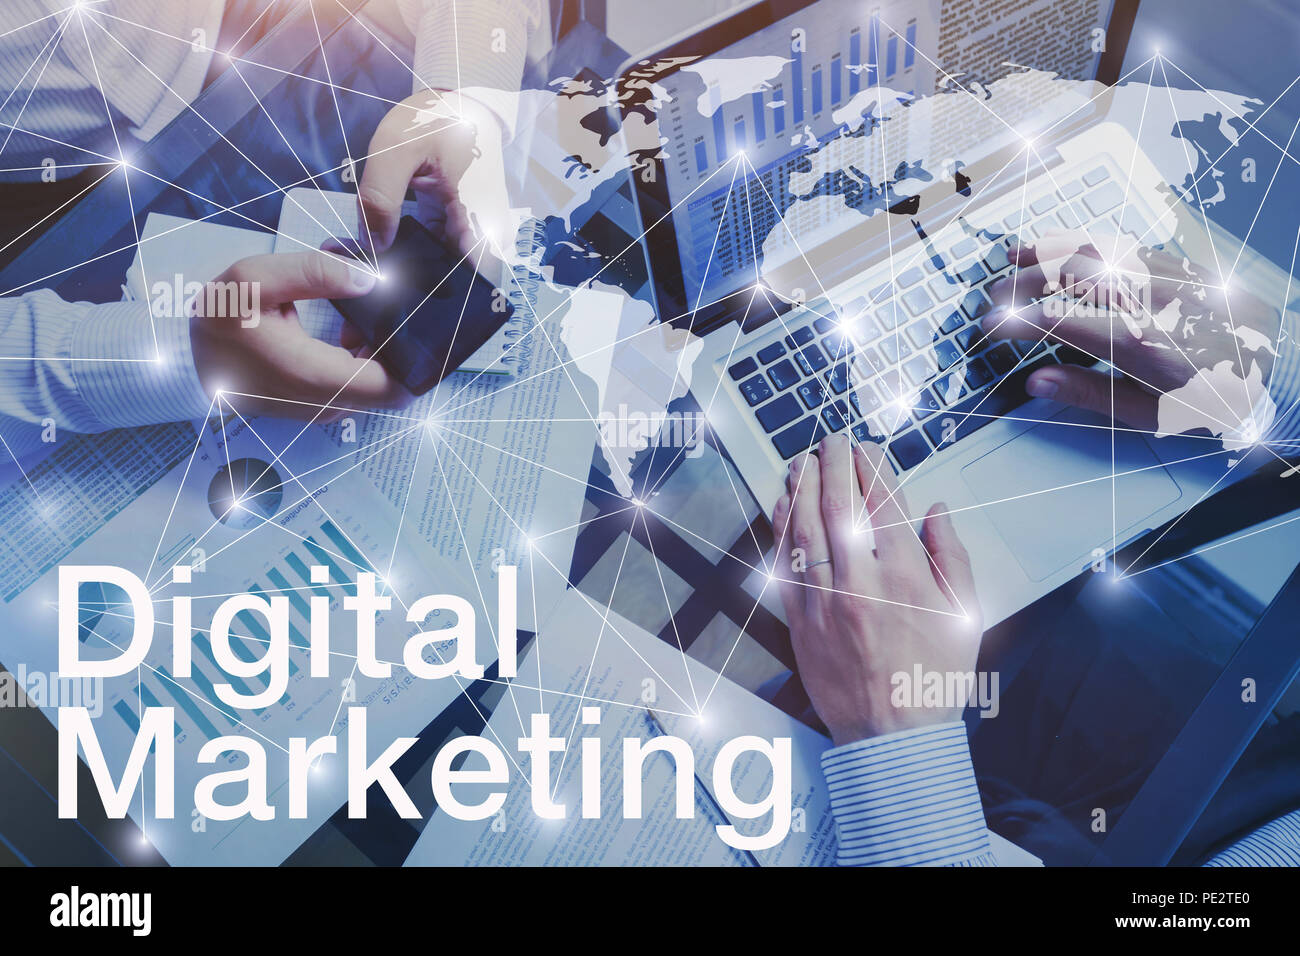 Concepto de marketing digital, de manos del equipo empresarial las personas trabajando en equipo Foto de stock